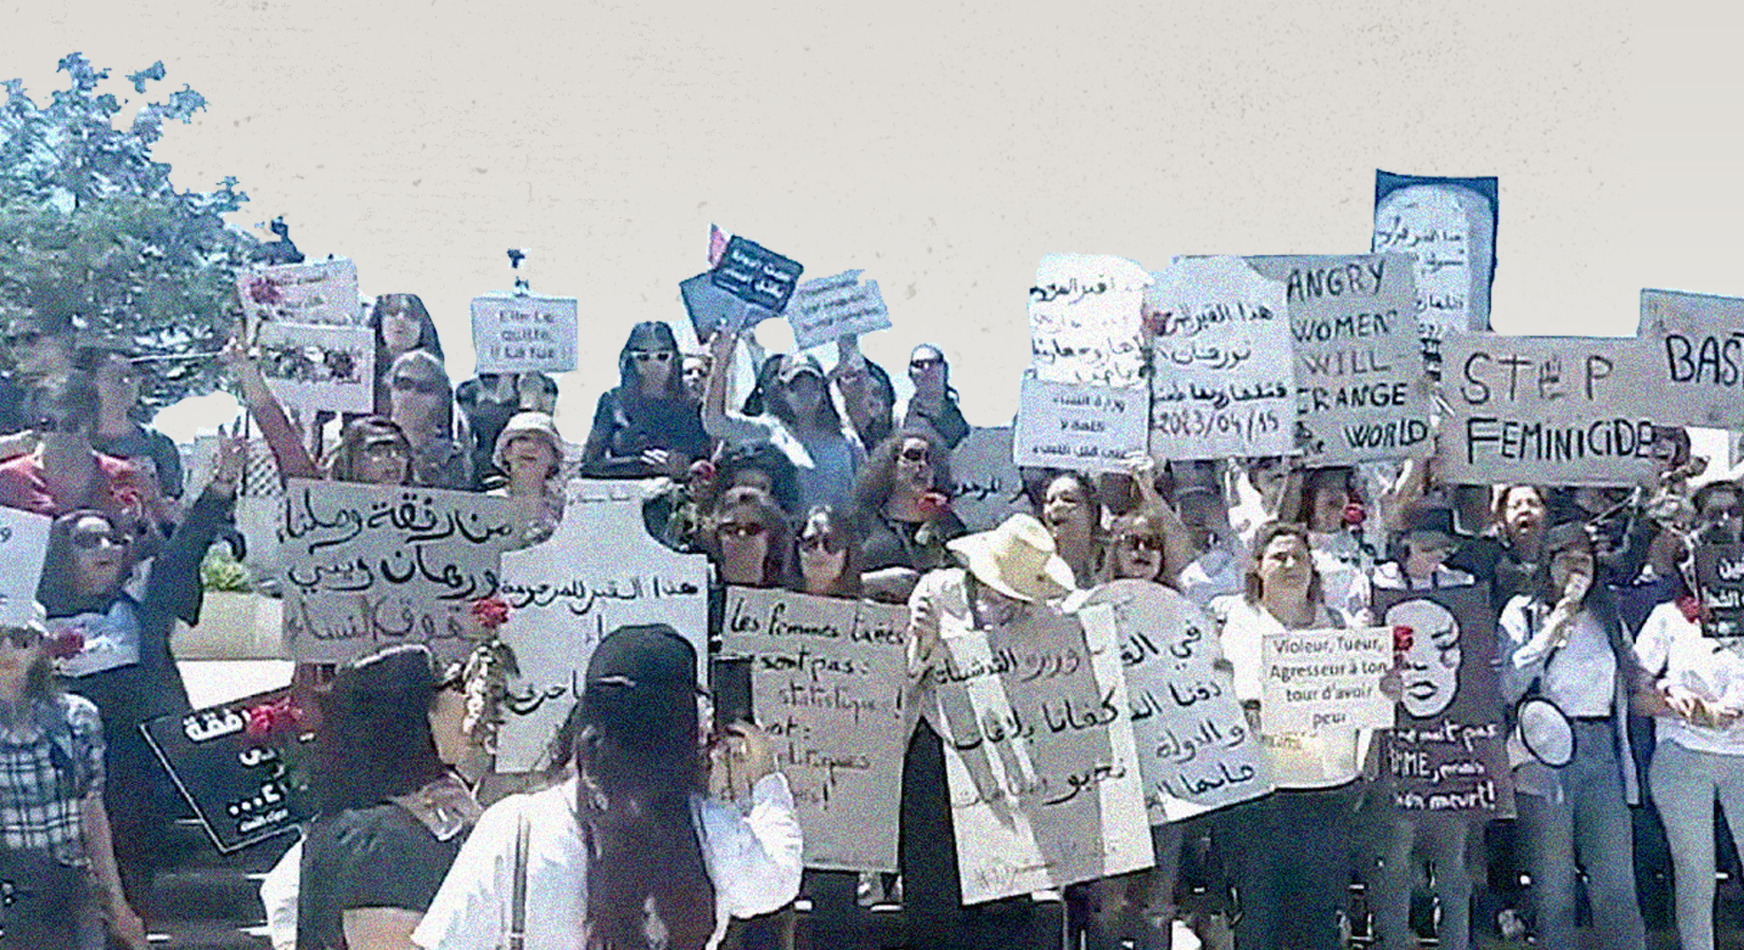 جنازة رمزية ضد قتل النساء والفتيات في تونس